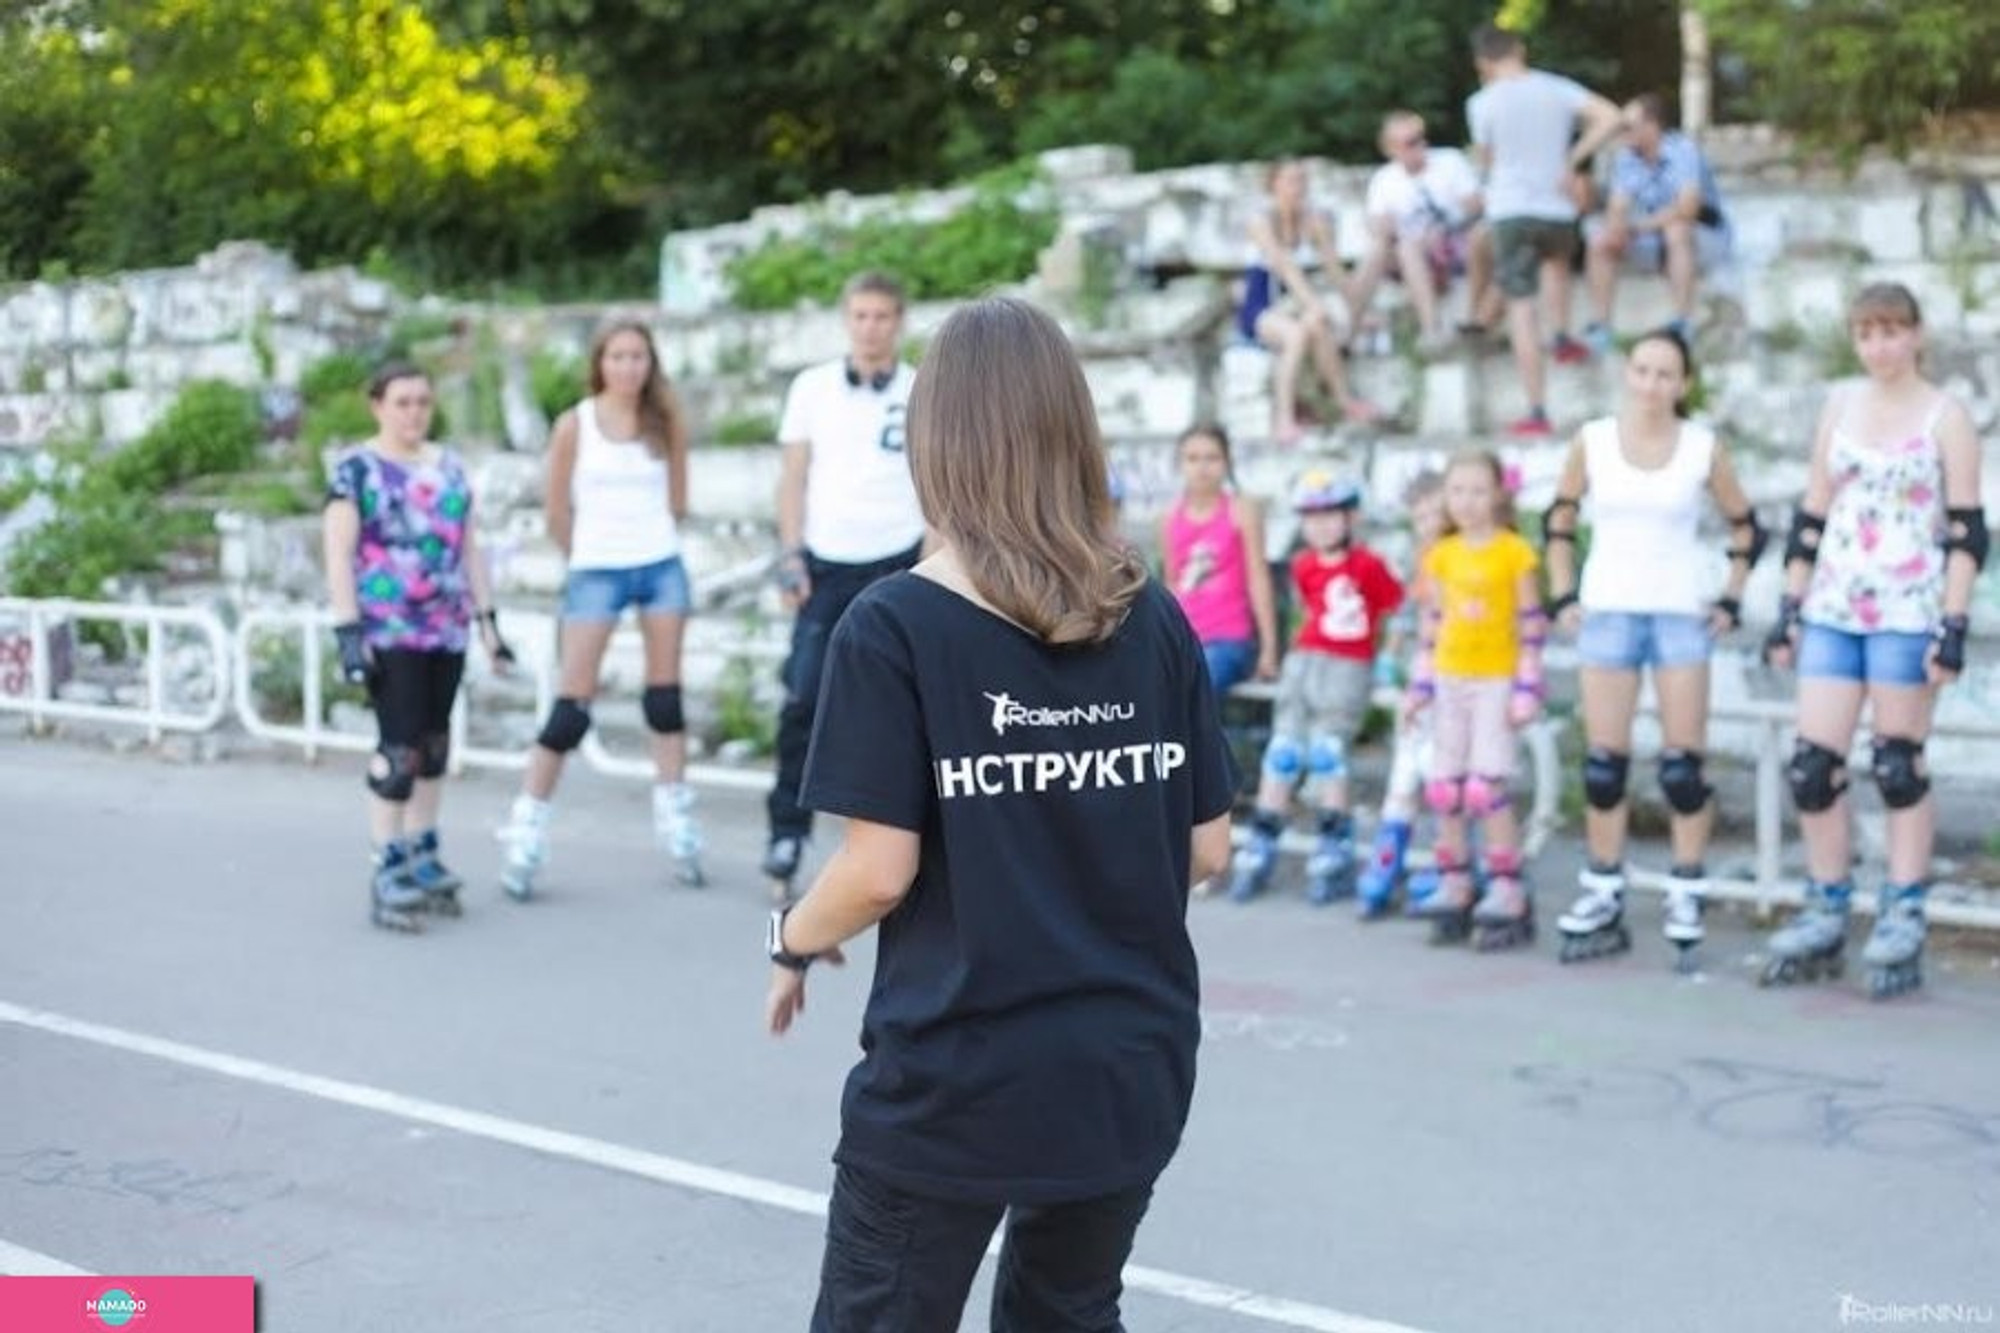 Rollernn, роллер-школа, обучение катанию на роликовых коньках в Нижнем Новгороде 